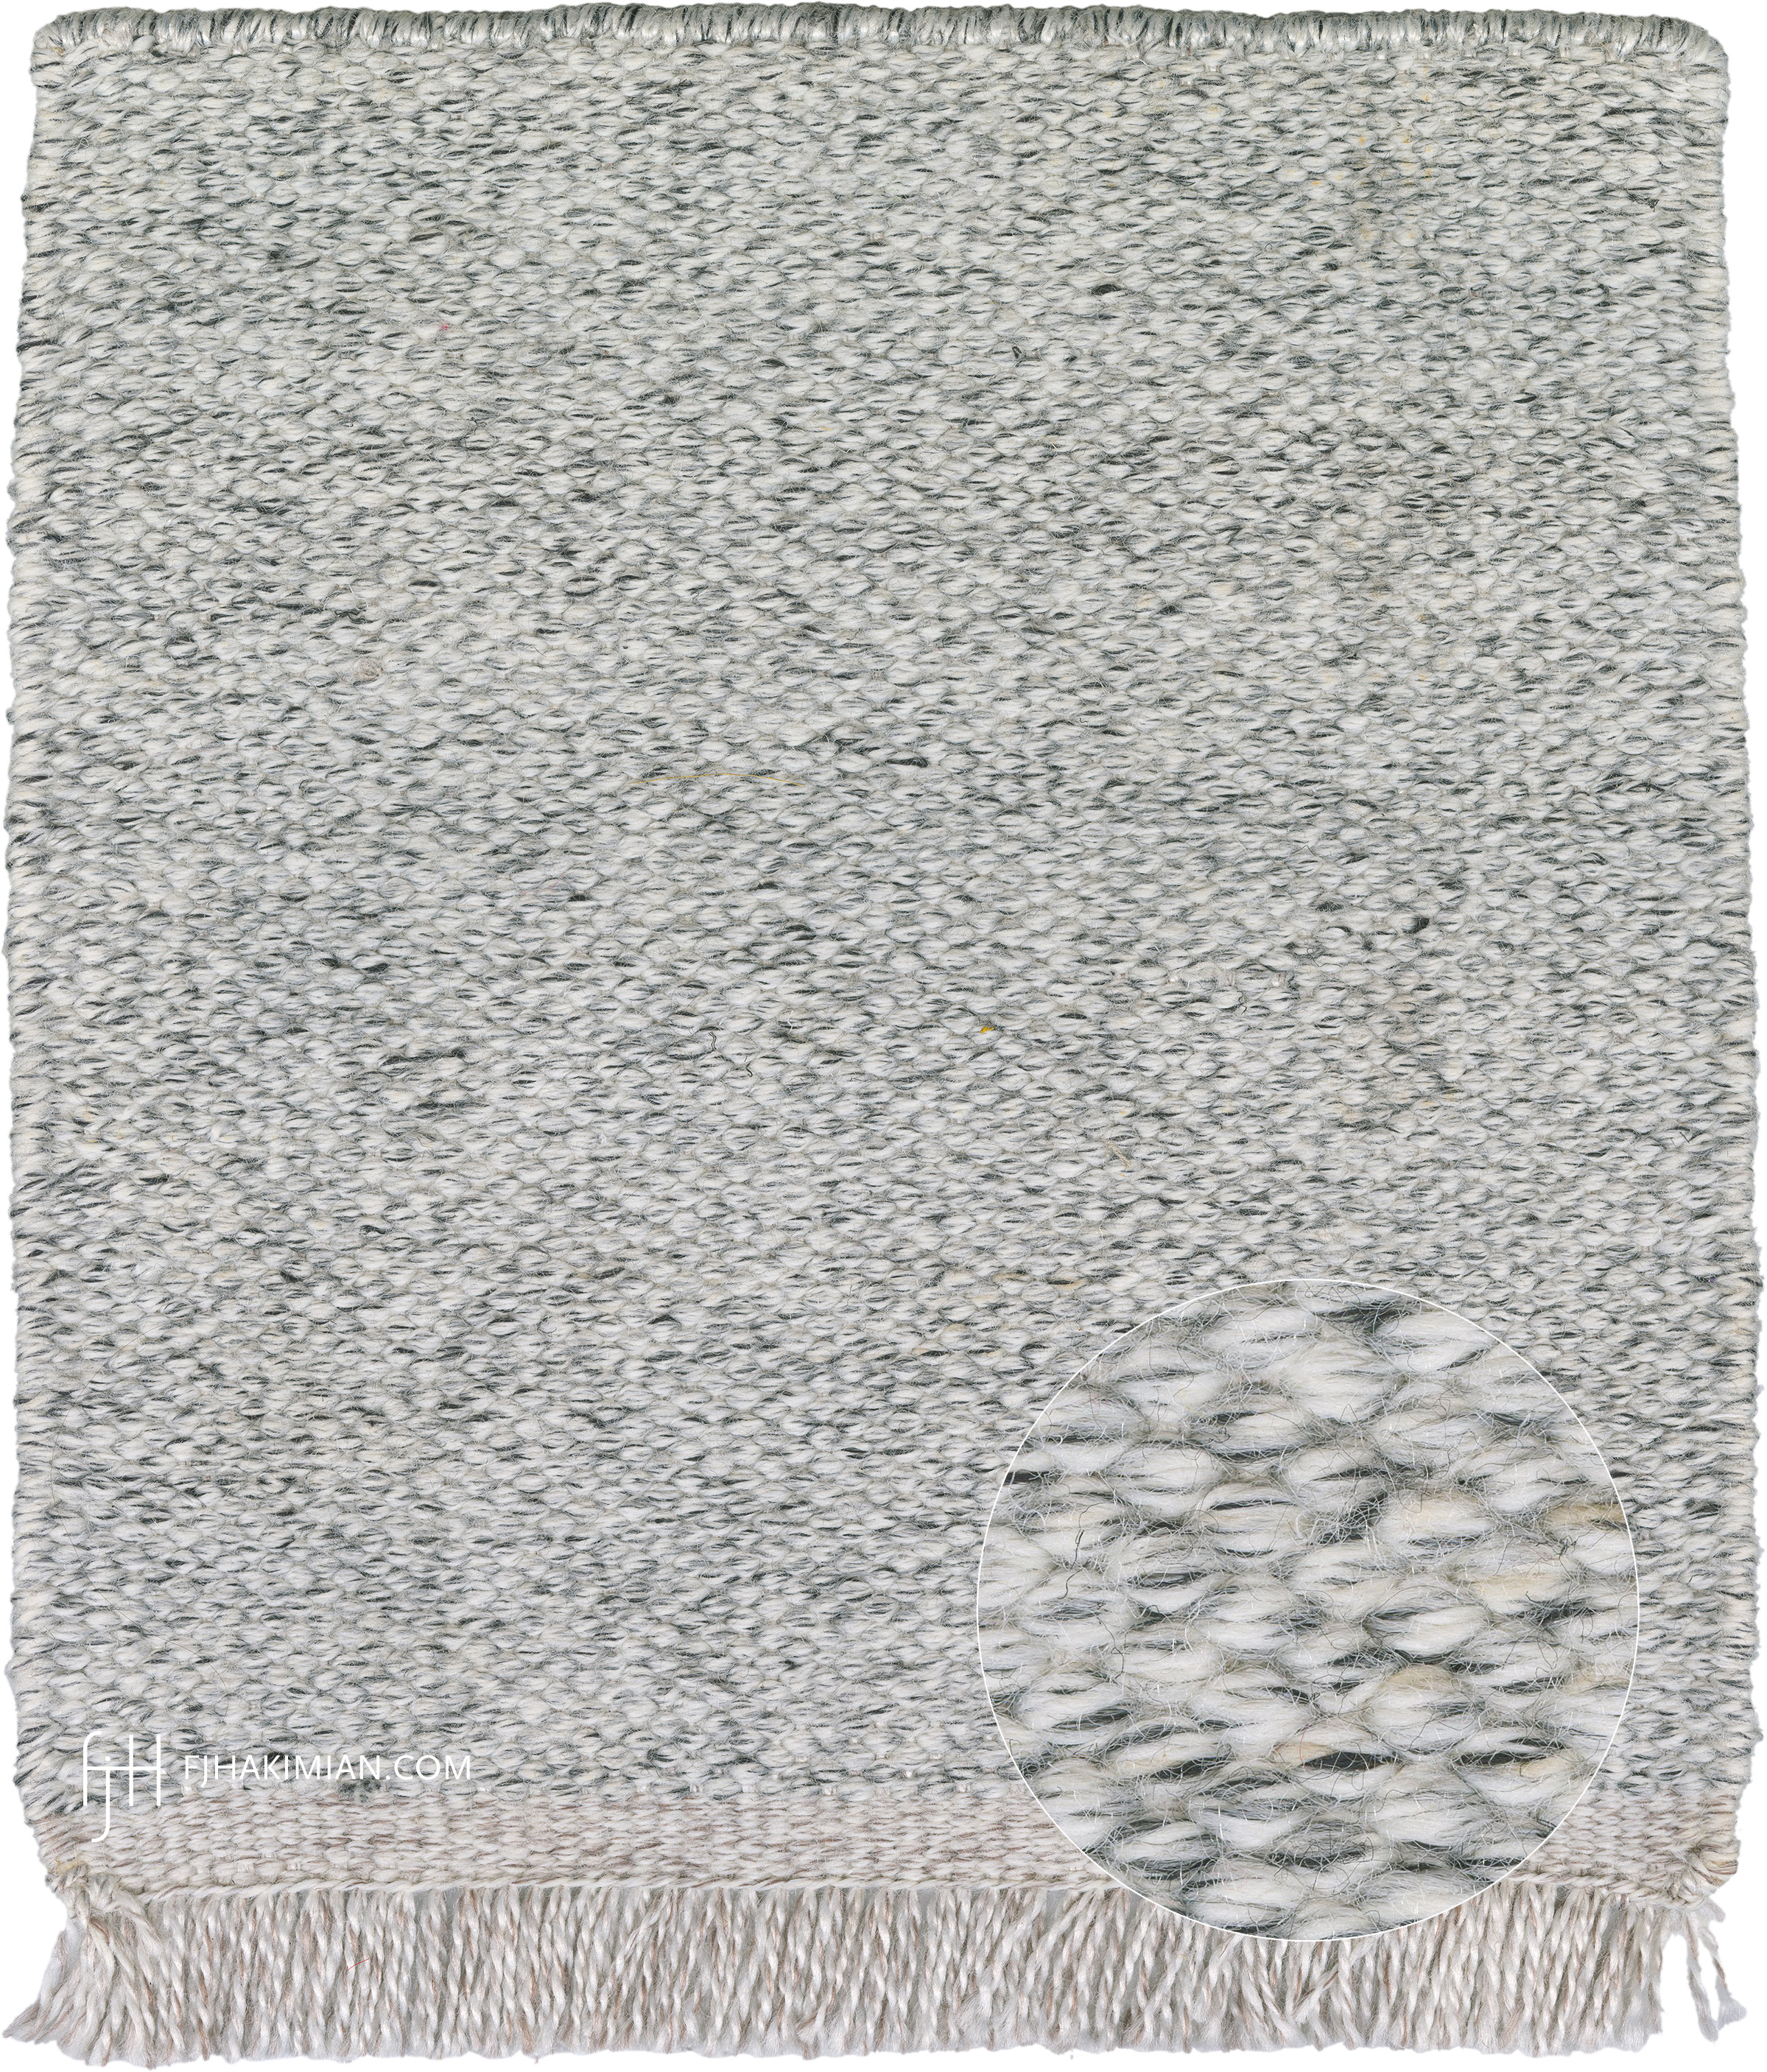 FJ Hakimian | 67977 | Custom Carpet